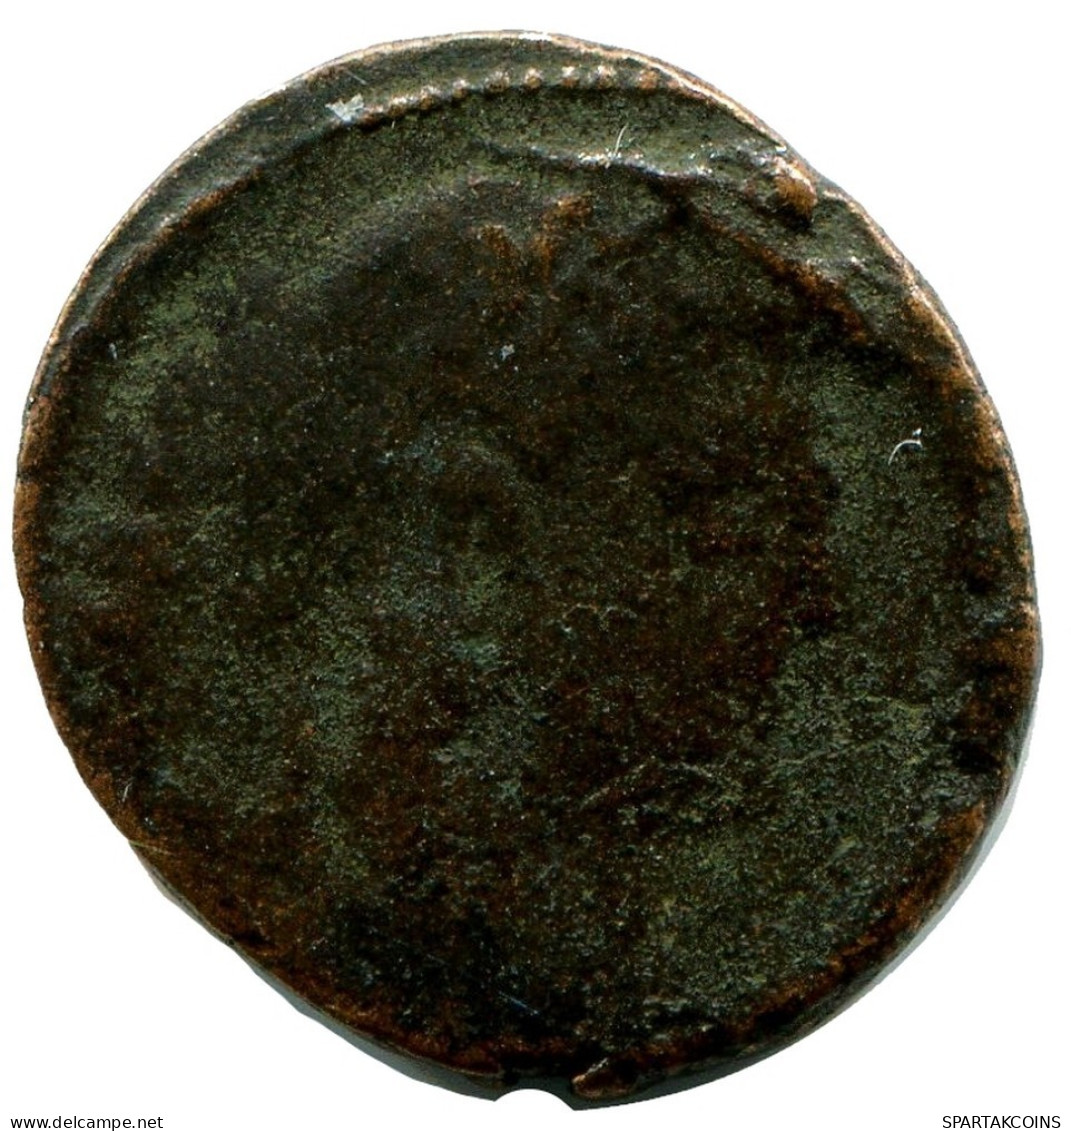 ROMAN Pièce MINTED IN CYZICUS FOUND IN IHNASYAH HOARD EGYPT #ANC11049.14.F.A - Der Christlischen Kaiser (307 / 363)